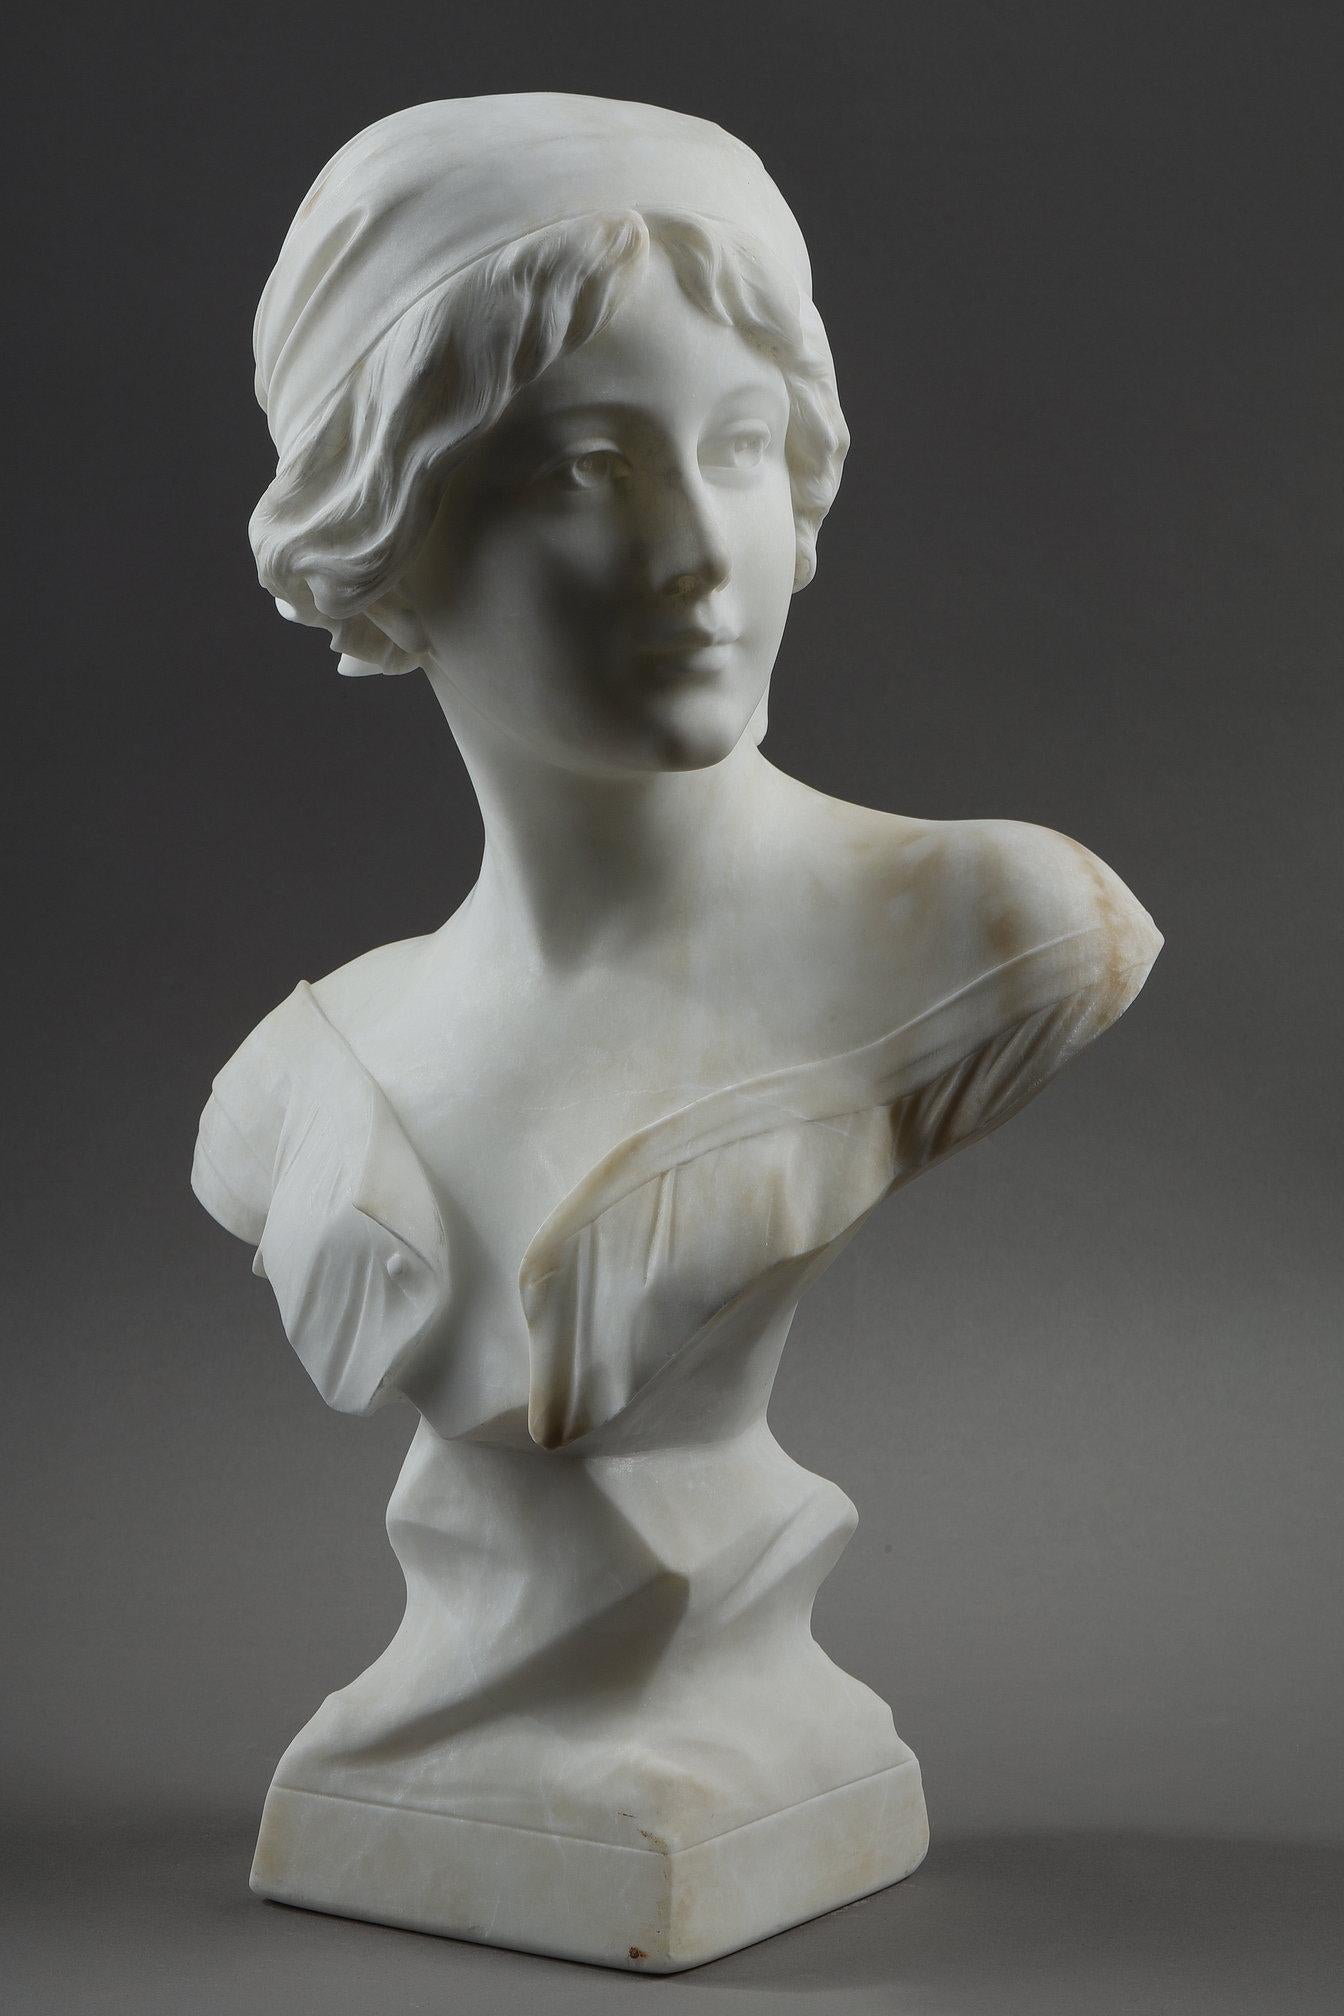 Alabasterskulptur einer Büste einer jungen Frau mit einem Kopftuch im Haar. Rückseitig signiert: A. Cyprien.

